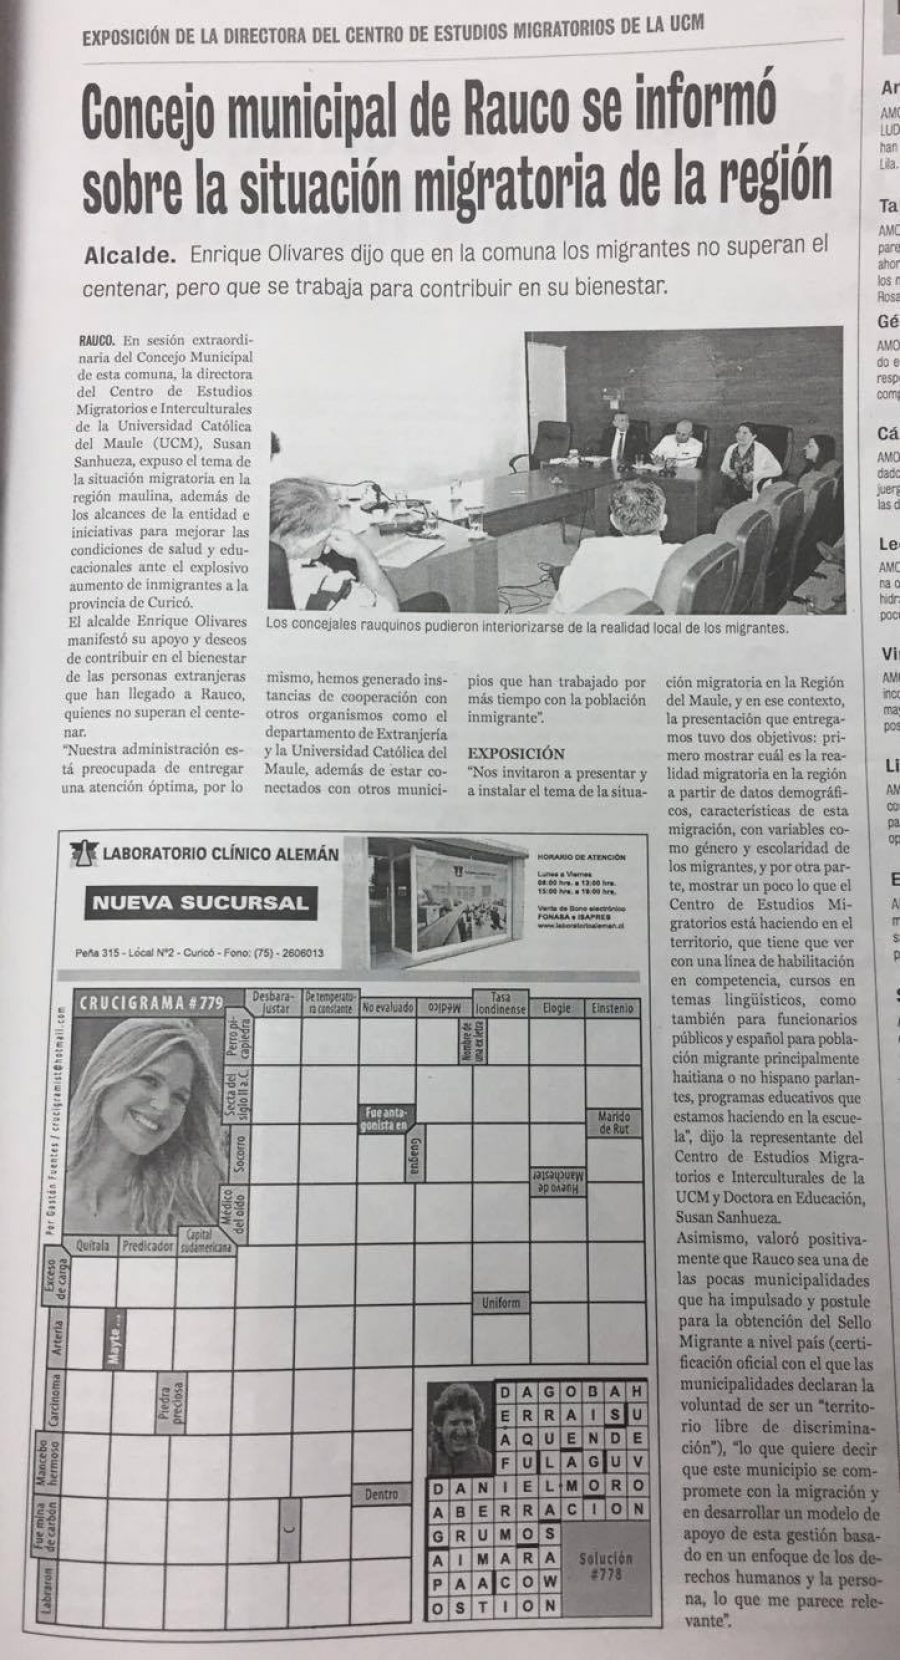 21 de noviembre en Diario La Prensa: “Concejo municipal de Rauco se informó sobre la situación migratoria de la región”